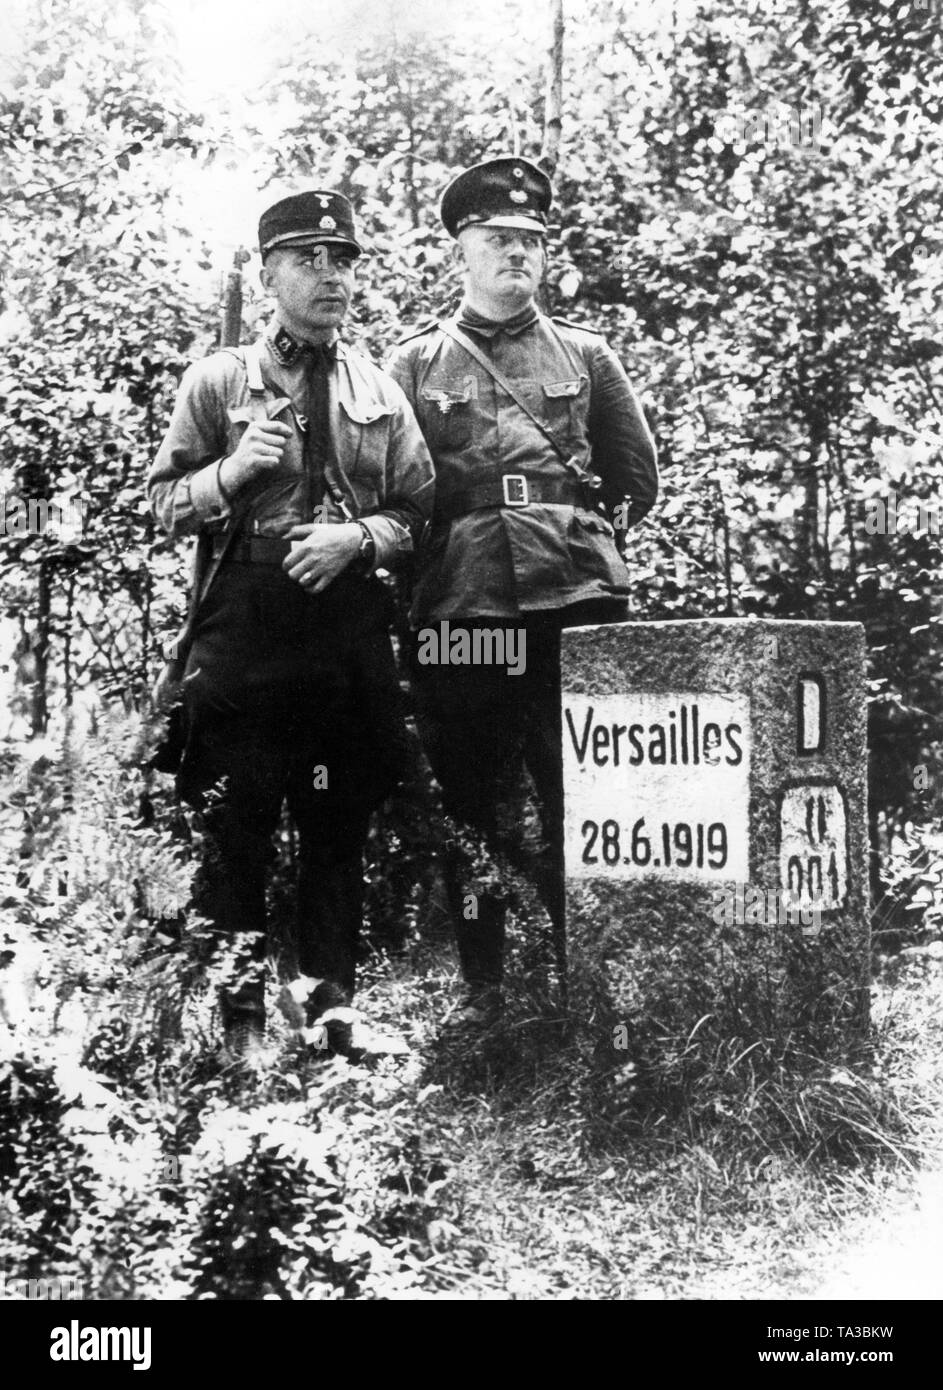 Die Inschrift auf dem Stein verweist auf die Abgrenzung der Vertrag von Versailles, der den Deutschen inakzeptabel war, vor allem zu den Nationalsozialisten. Hier ein Mann in einer SS-Uniform (links) geht mit einem Zollbeamten auf Patrouille. Stockfoto